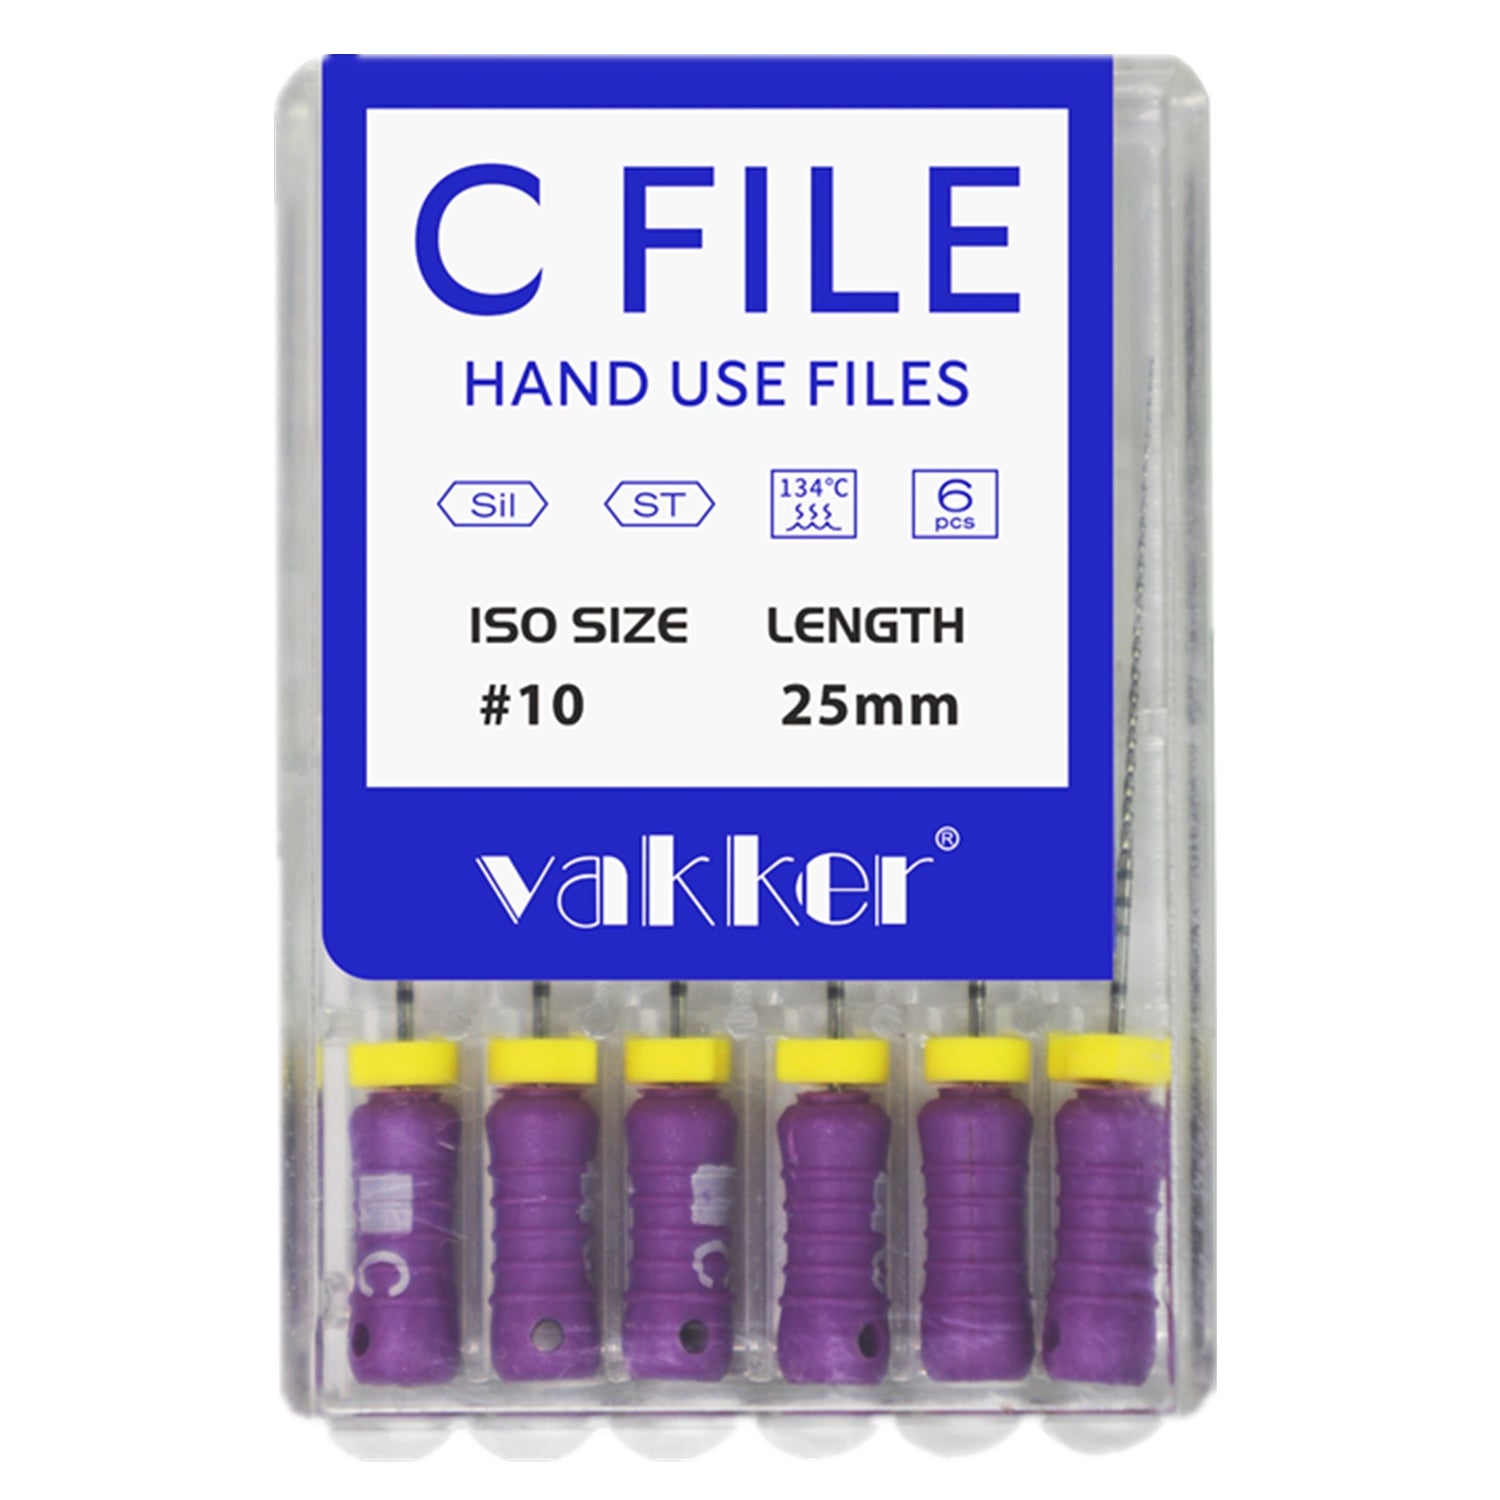 Vakker® 21/25mm C-Files Stainless Steel 6/pk Hand Use